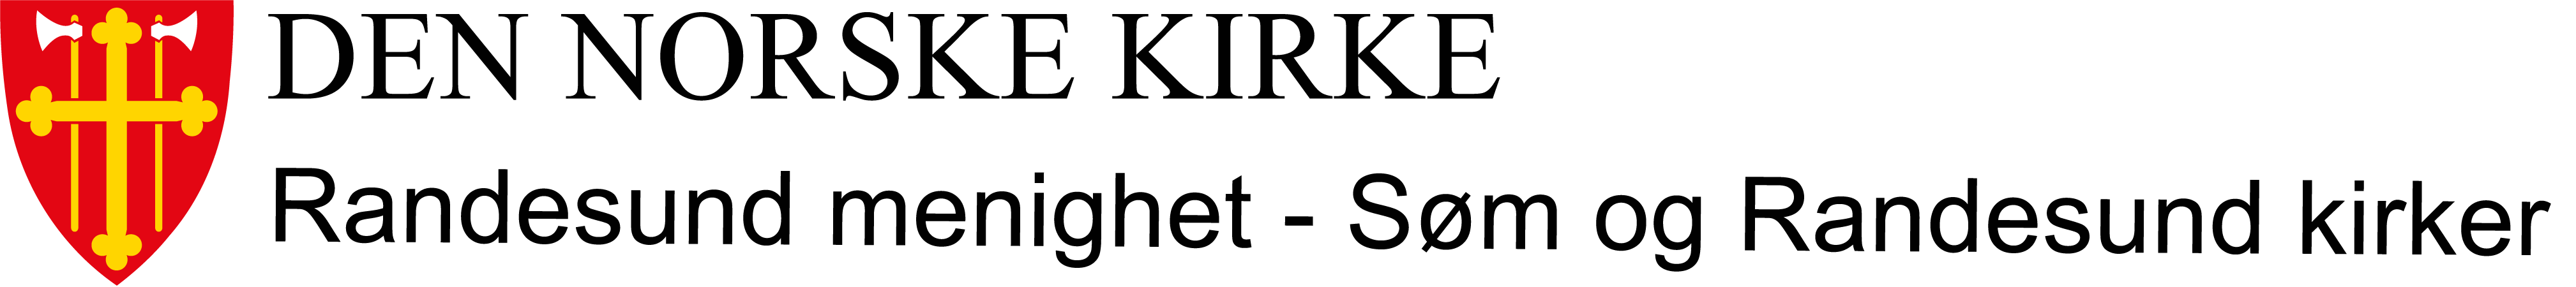 Randesund menighet - Søm og Randesund kirke logo